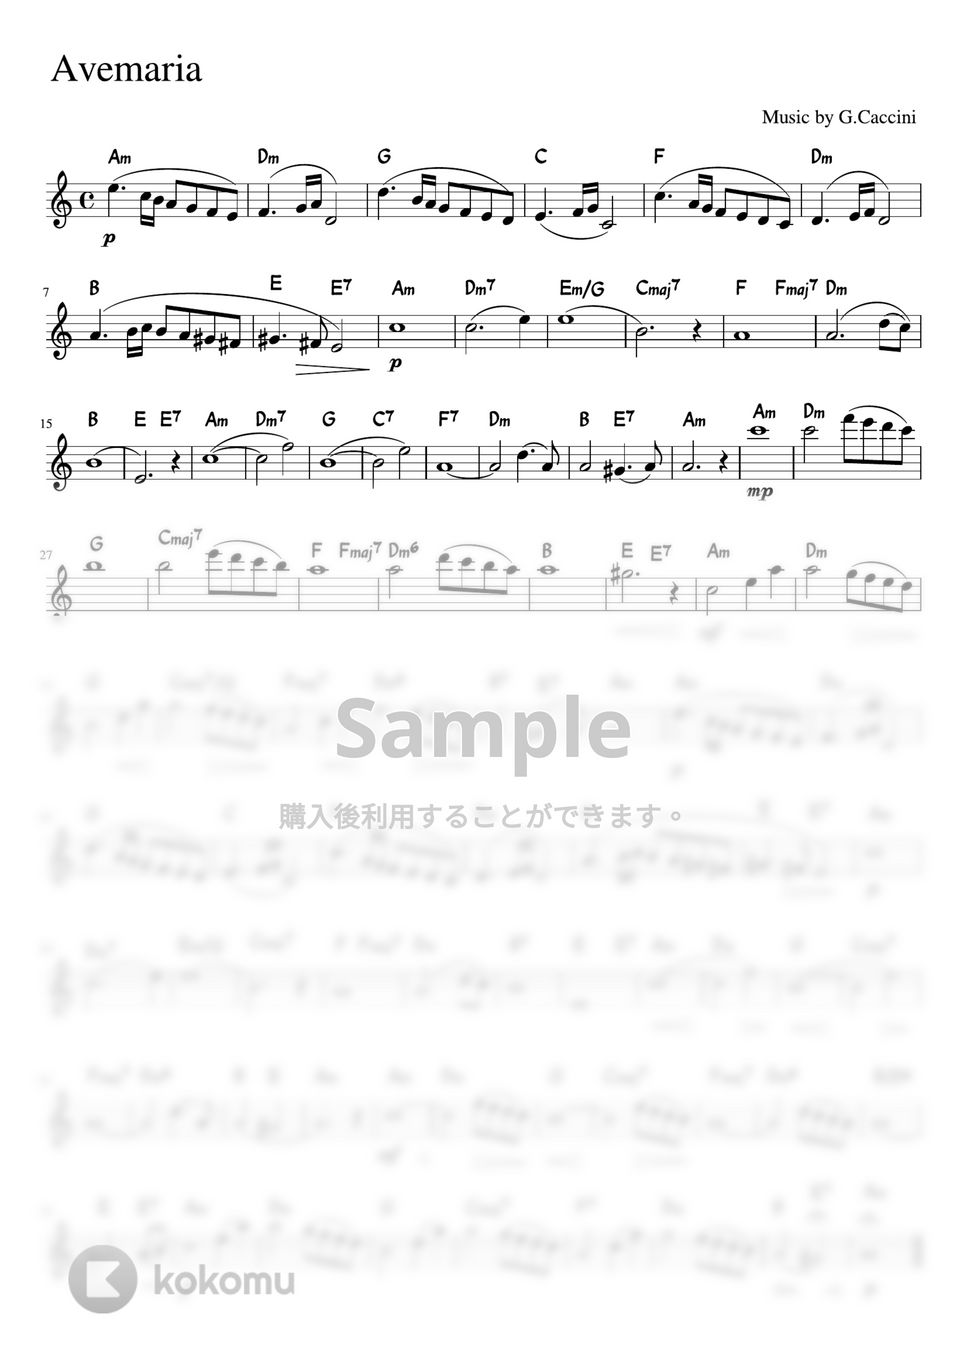 カッチーニ - アベマリア (Am・メロディーコード) by pfkaori